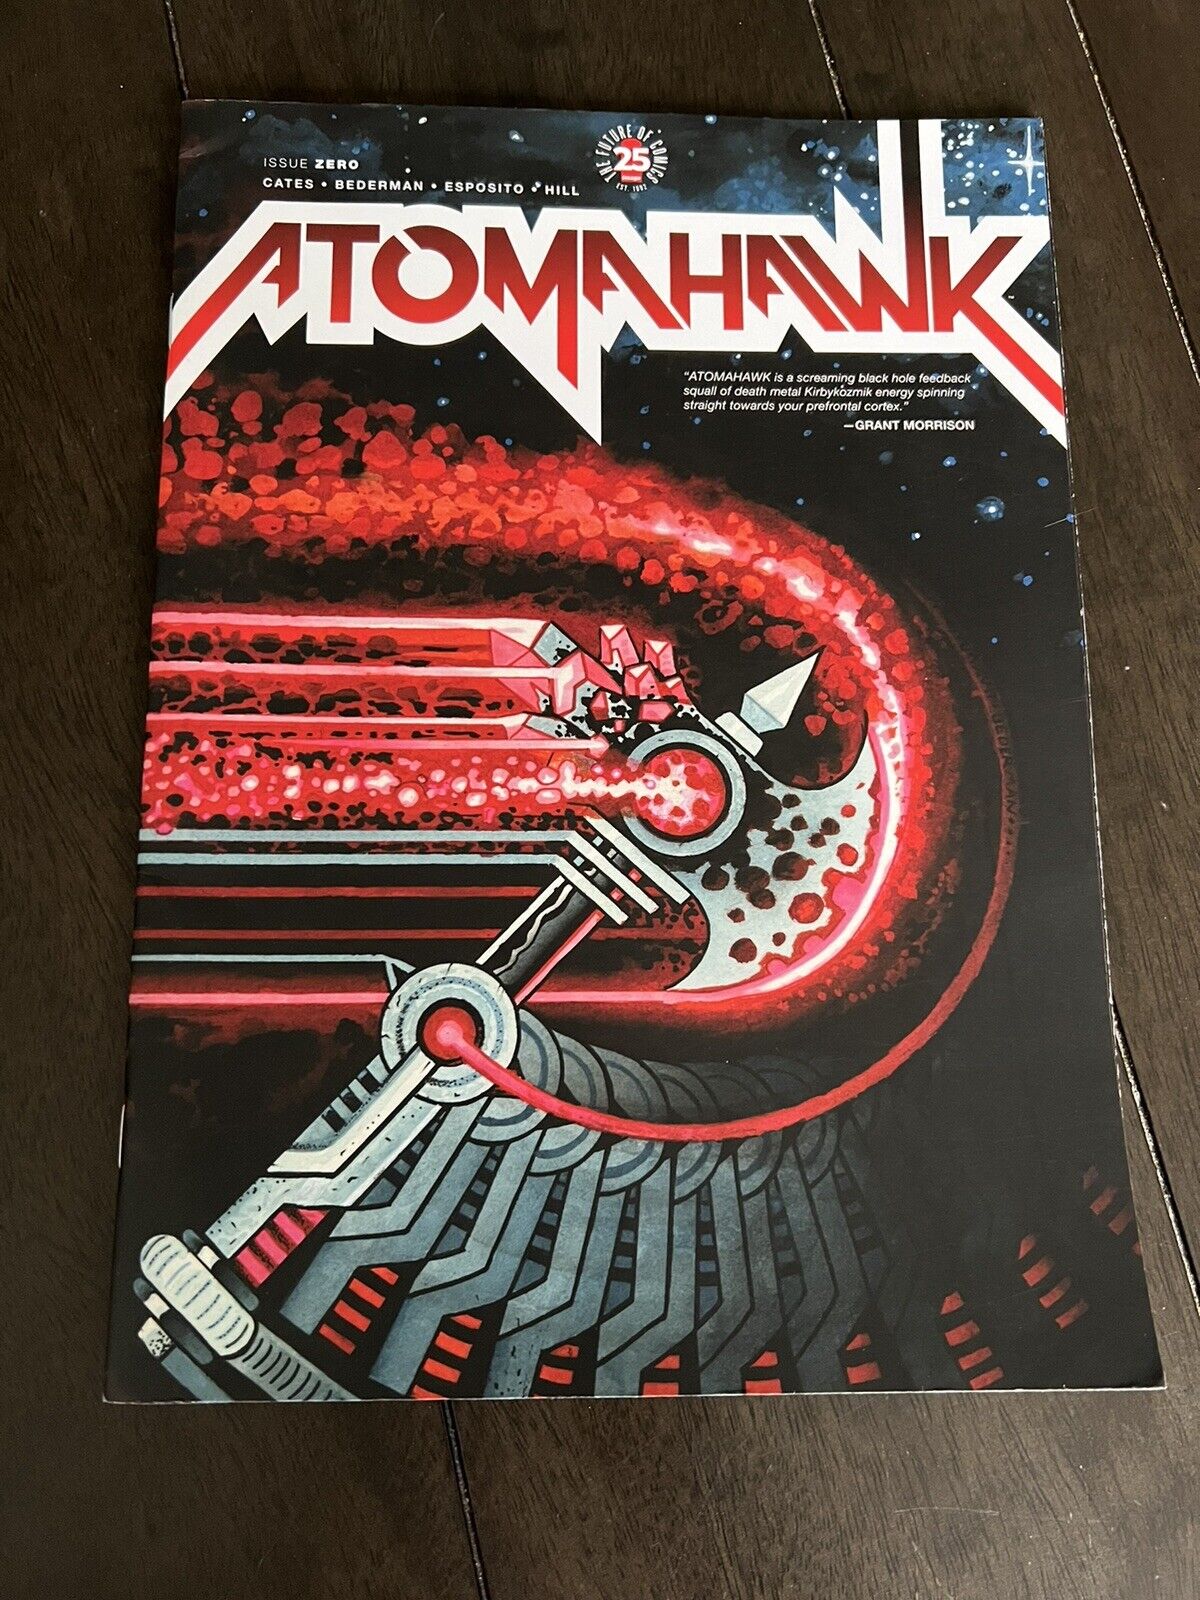 Atomahawk Issue 0 - Image Comics 2017 - Magazine Sized - Donny Cates Smoke Free